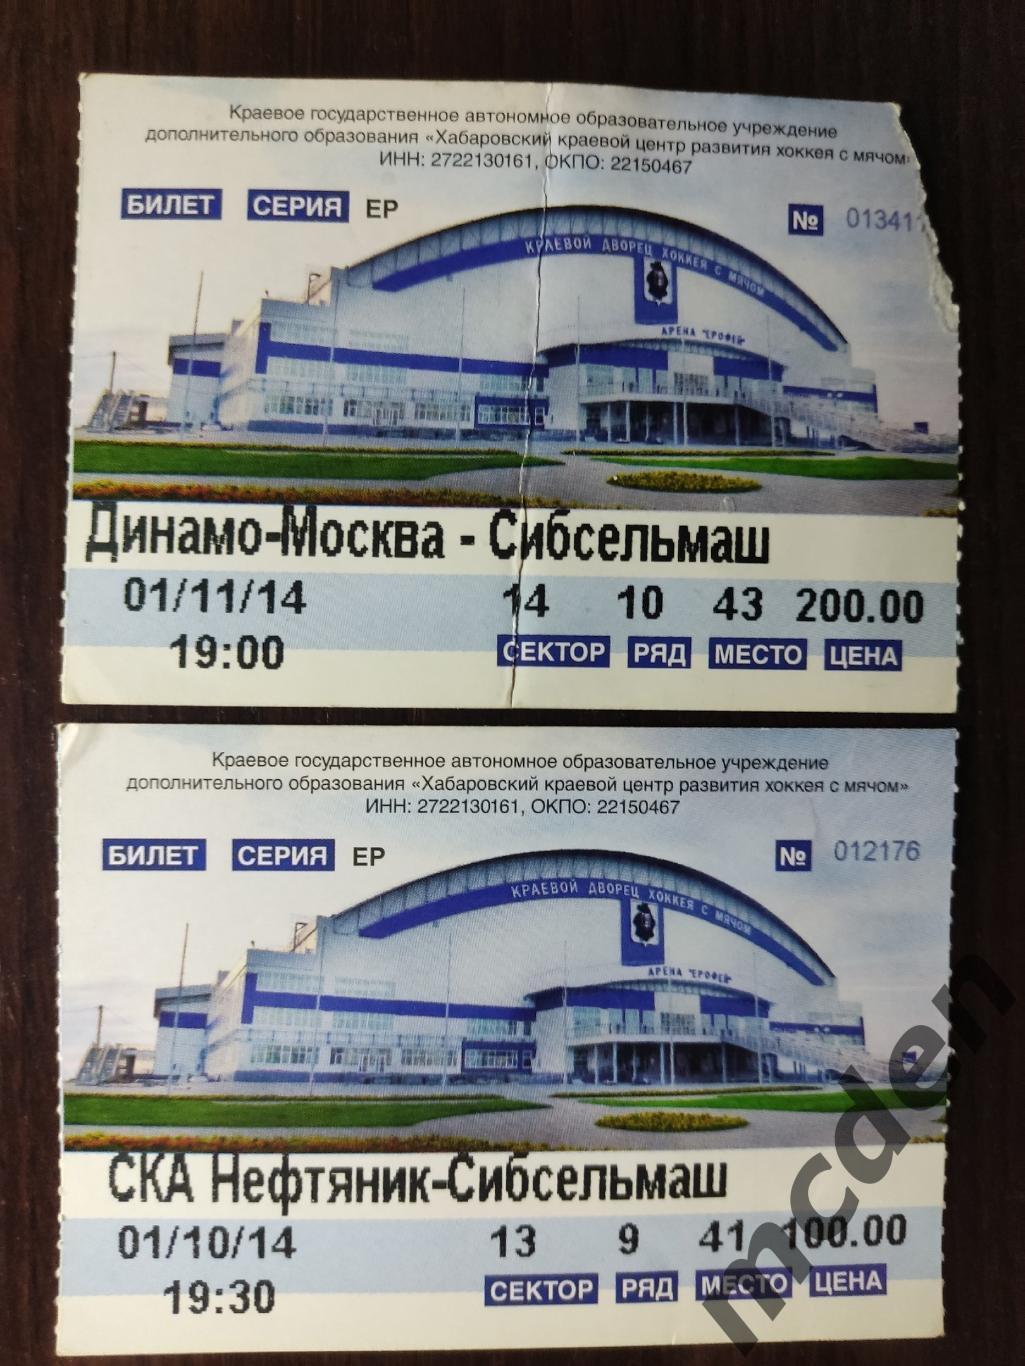 СКА-Нефтяник Хабаровск - Сибсельмаш Новосибирск 01 октярбя 2014